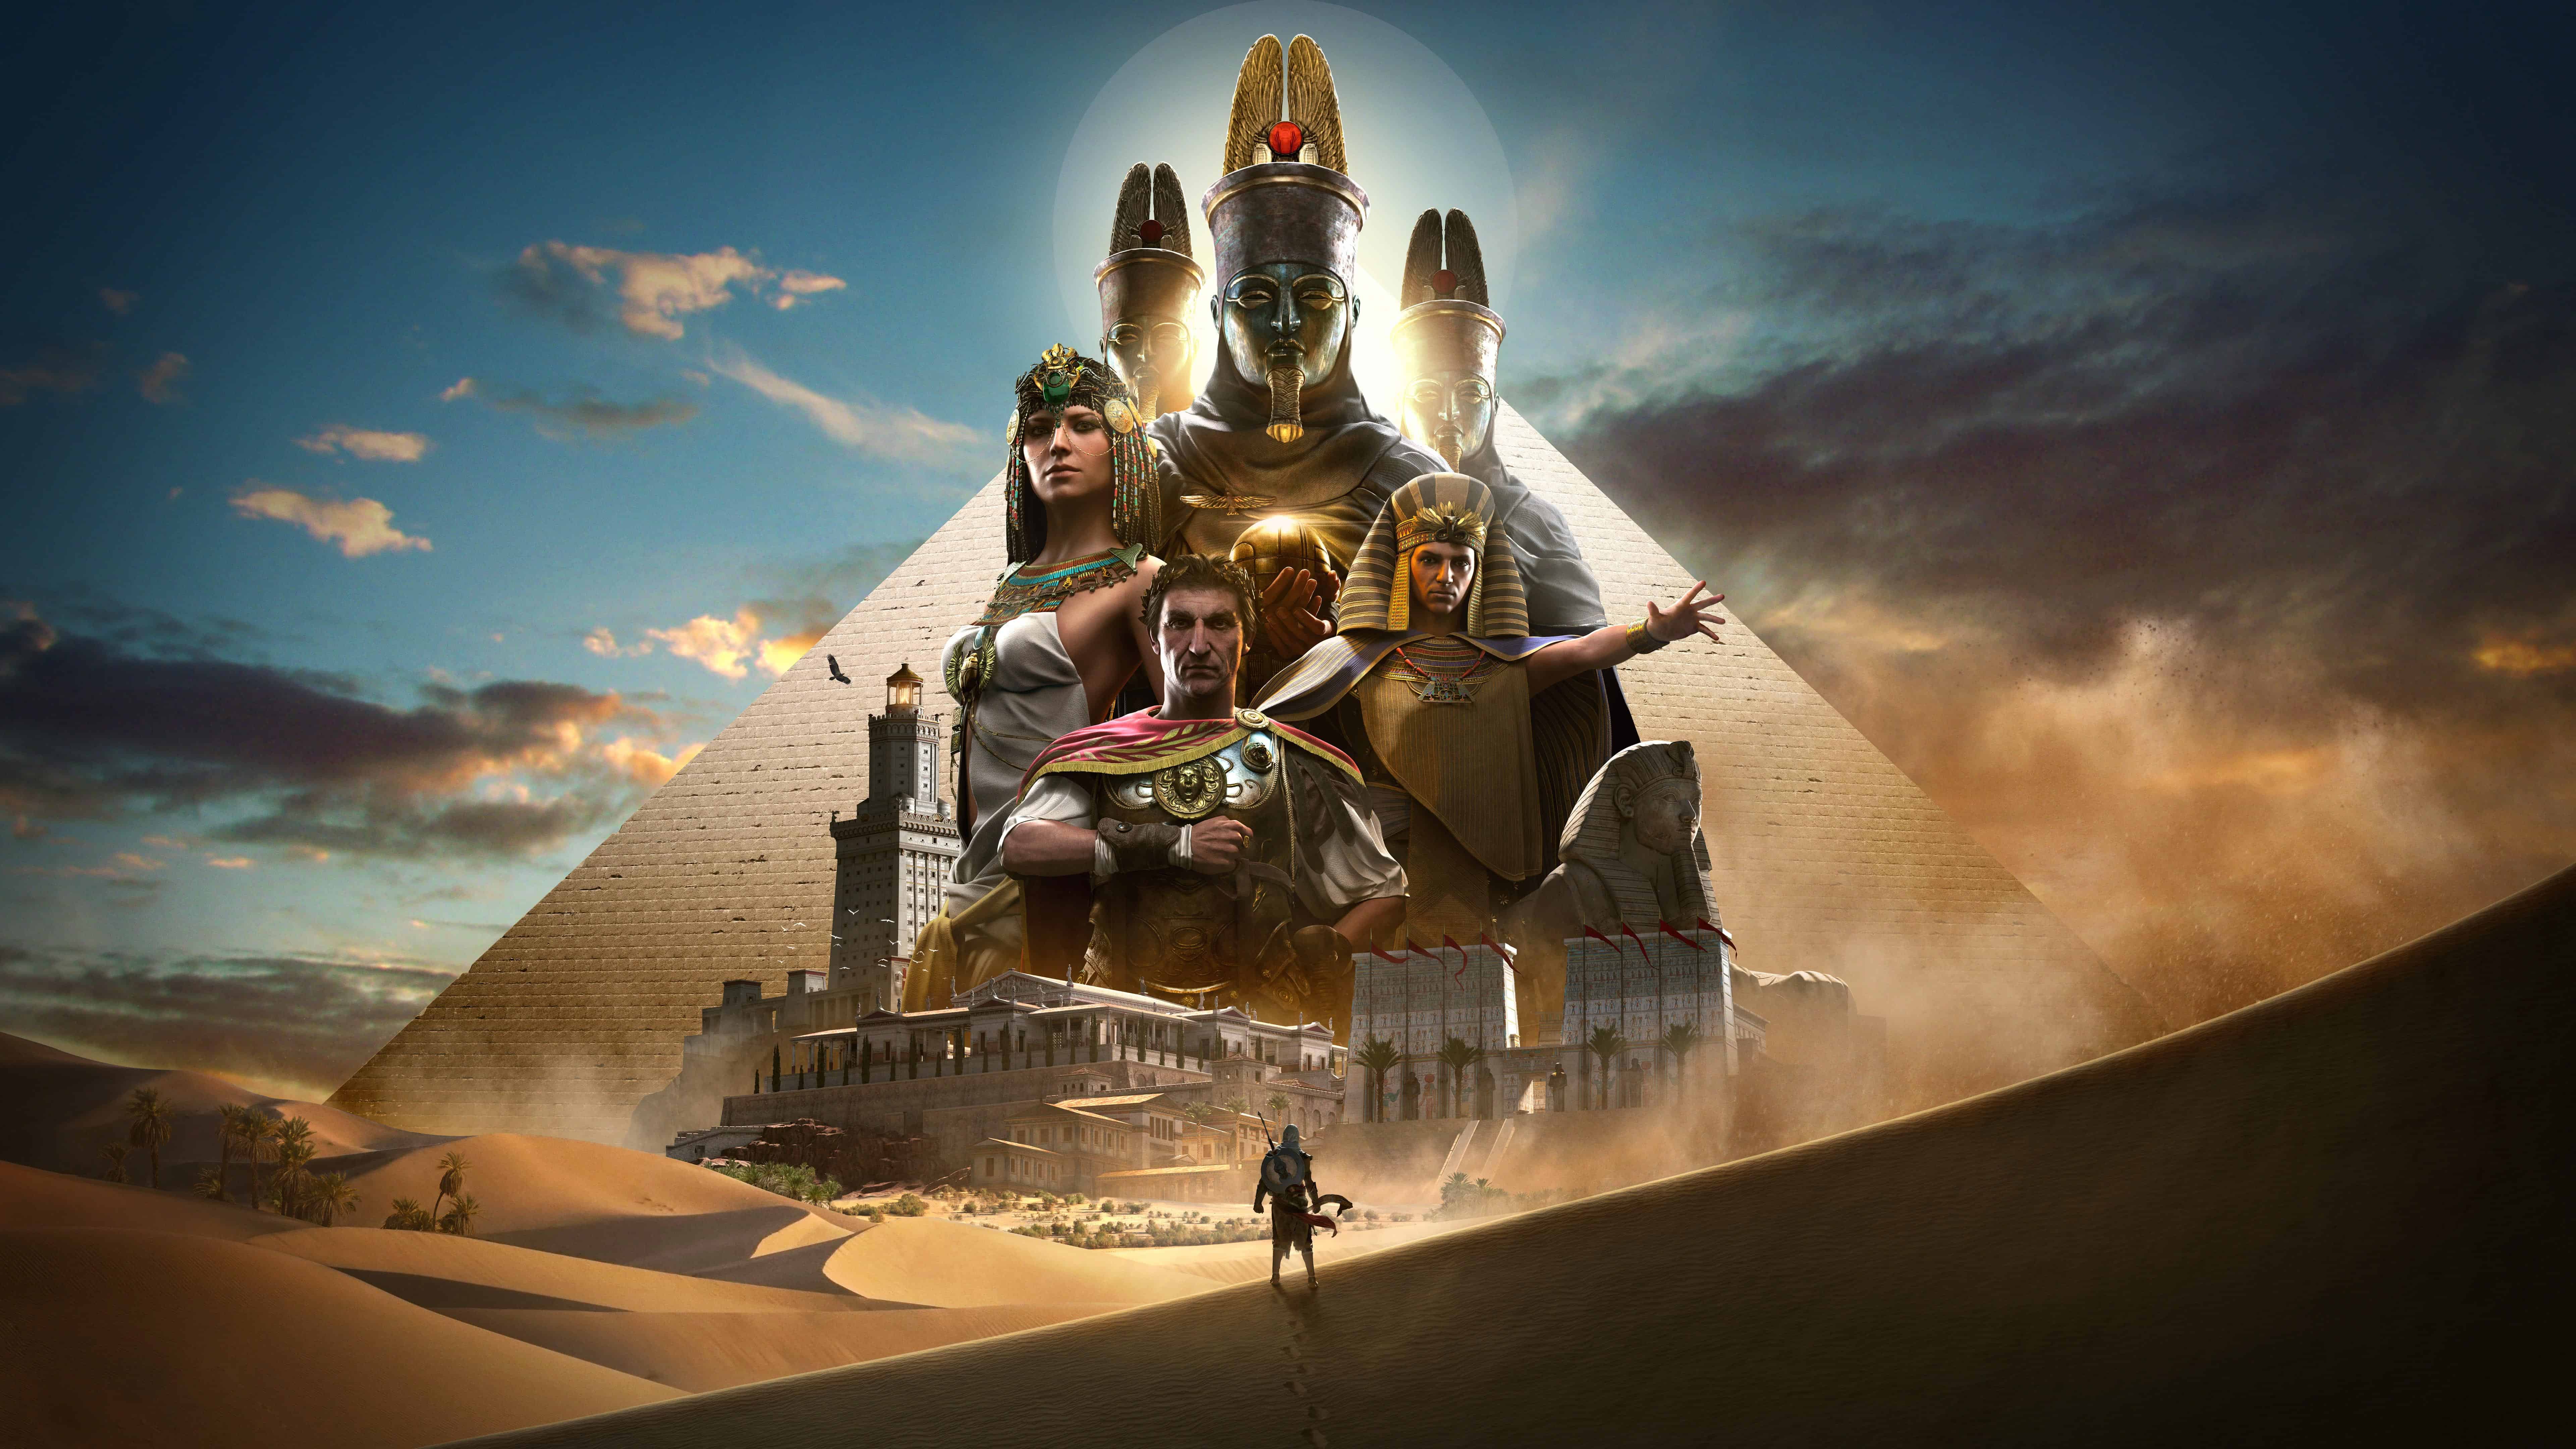 Assassins Creed Origins Pyramids Egypt UHD 8K Wallpaper   Pixelzcc